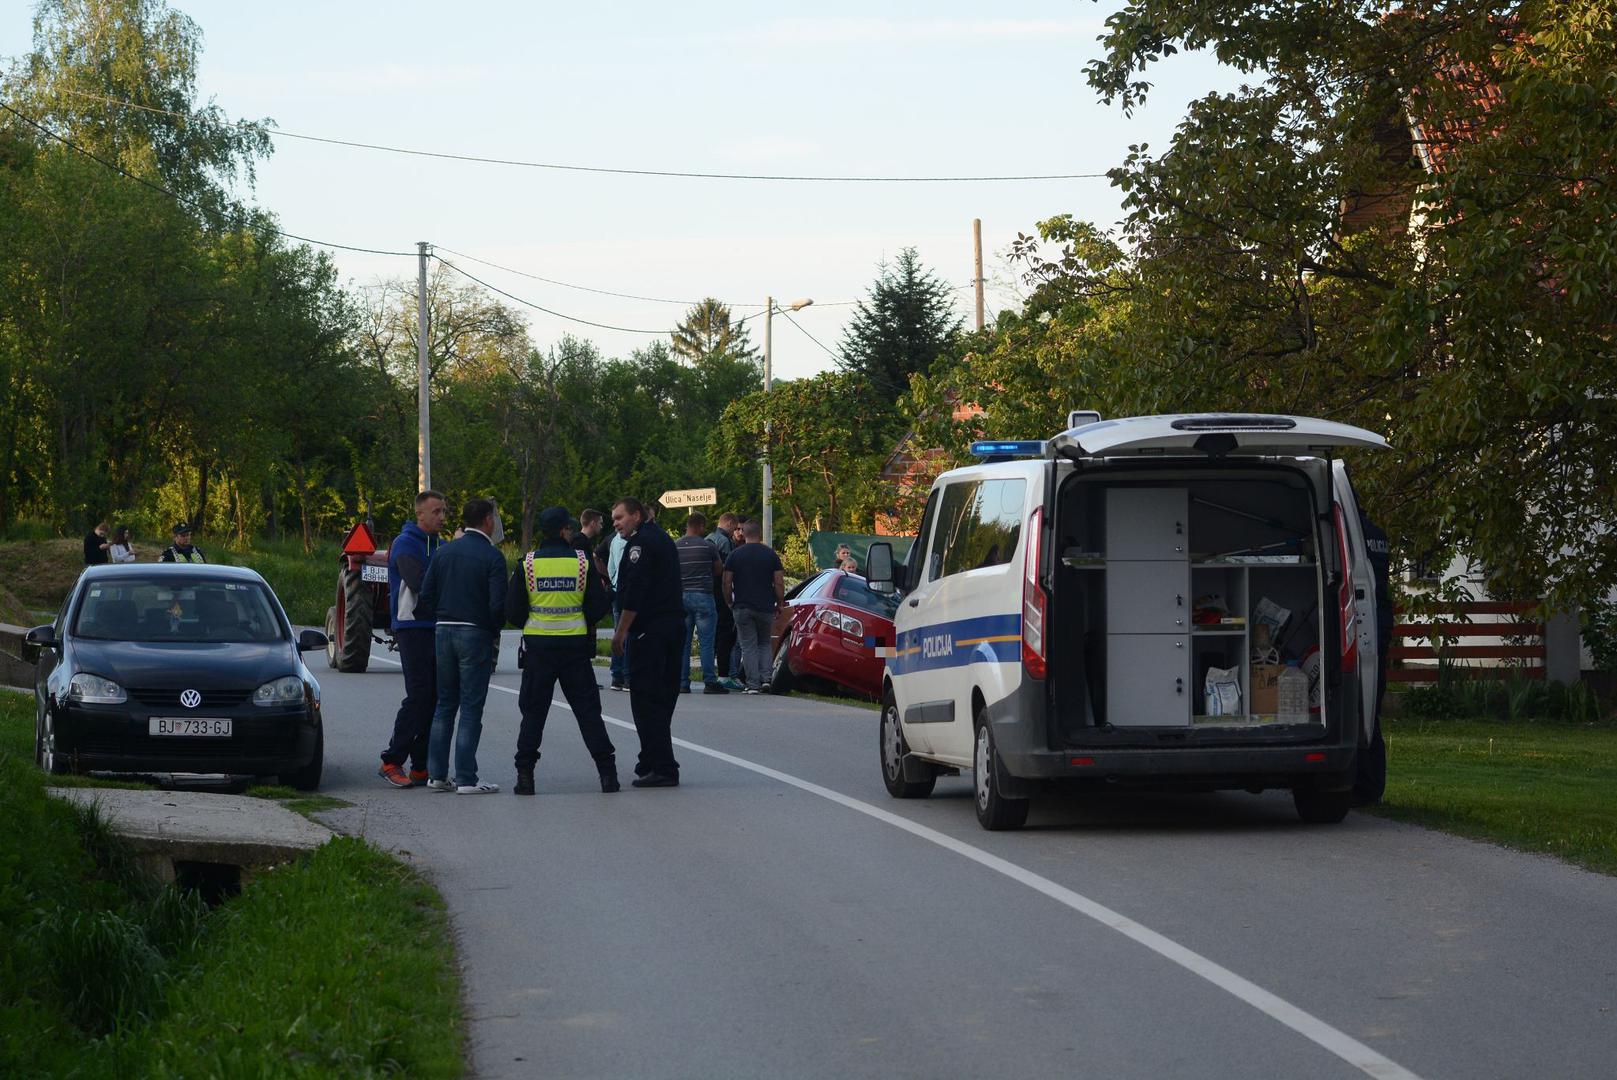 U mjestu Stari Skucani kod Bjelovara došlo je do prometne nesreće.

